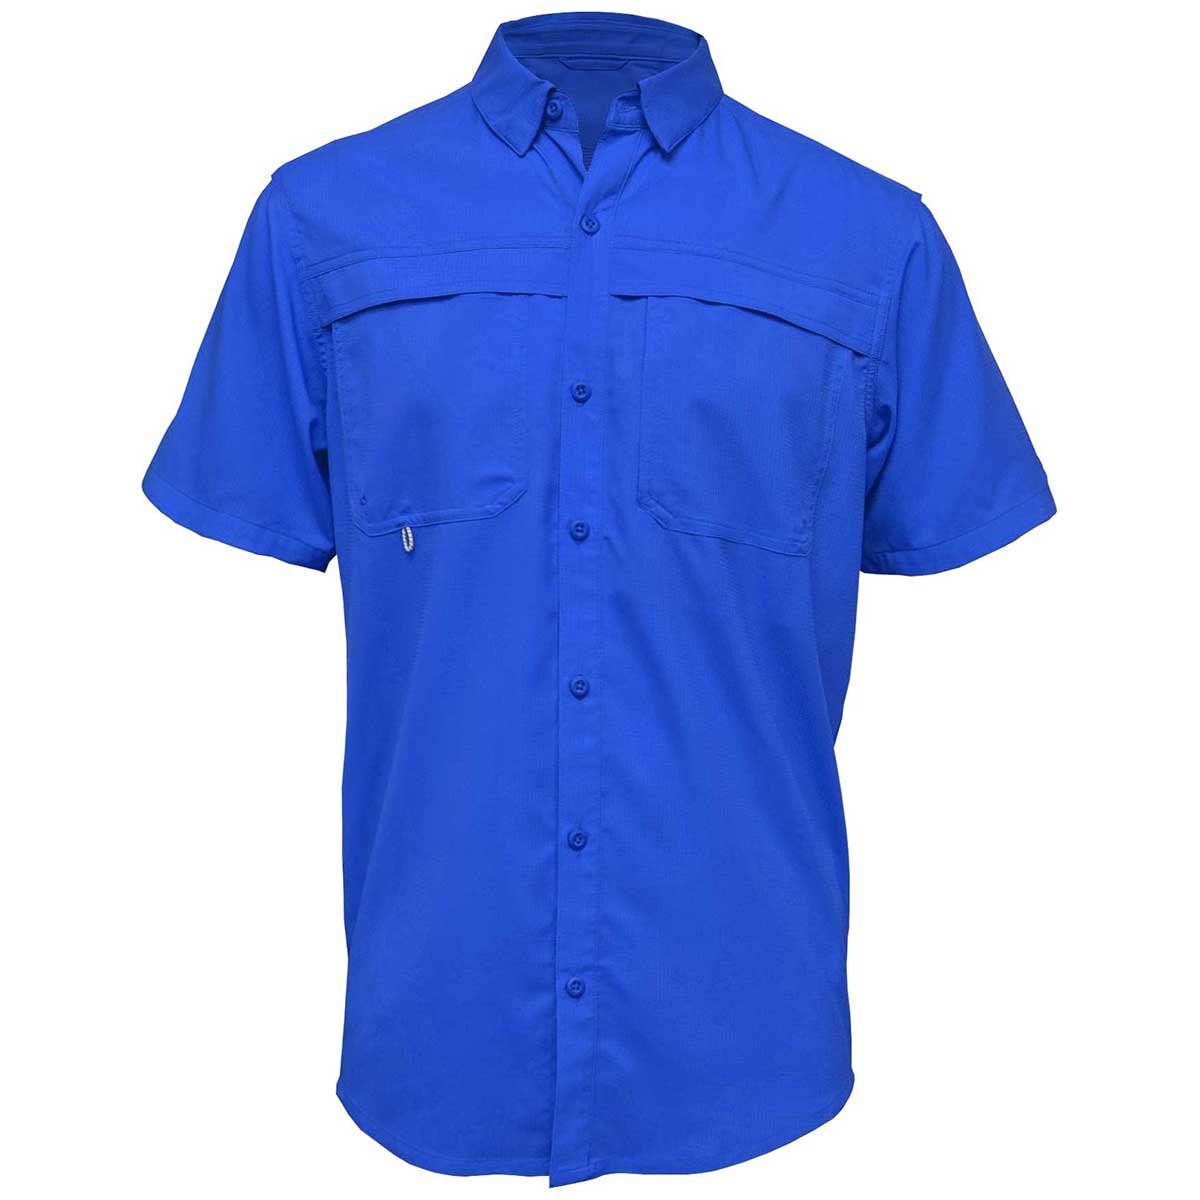 Mojo Sportswear Men's Short Sleeve SoWal TFS, Size: 3XL, Blue